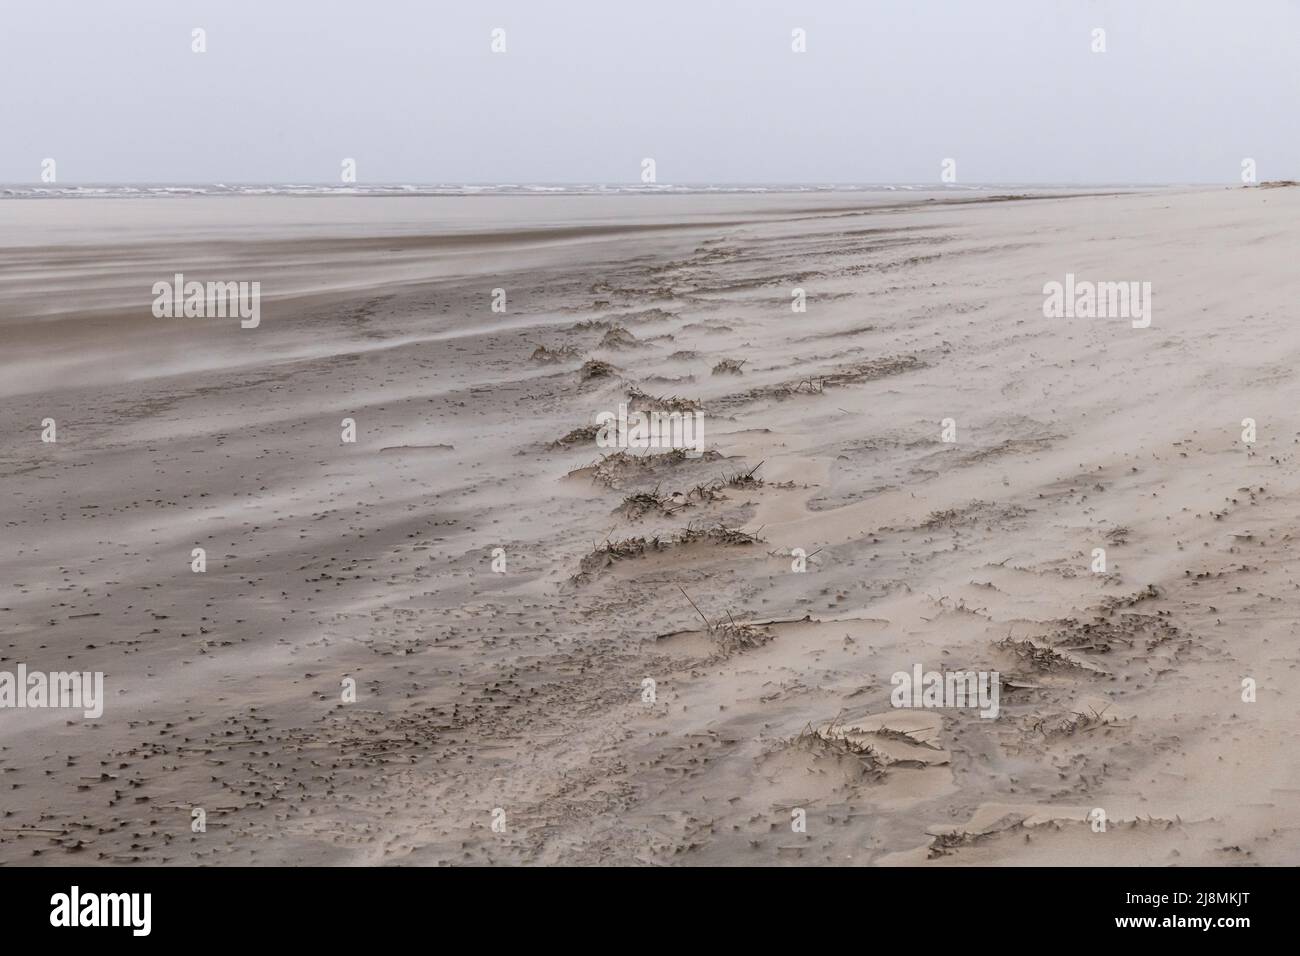 solitude de plage de sable pendant la tempête Banque D'Images